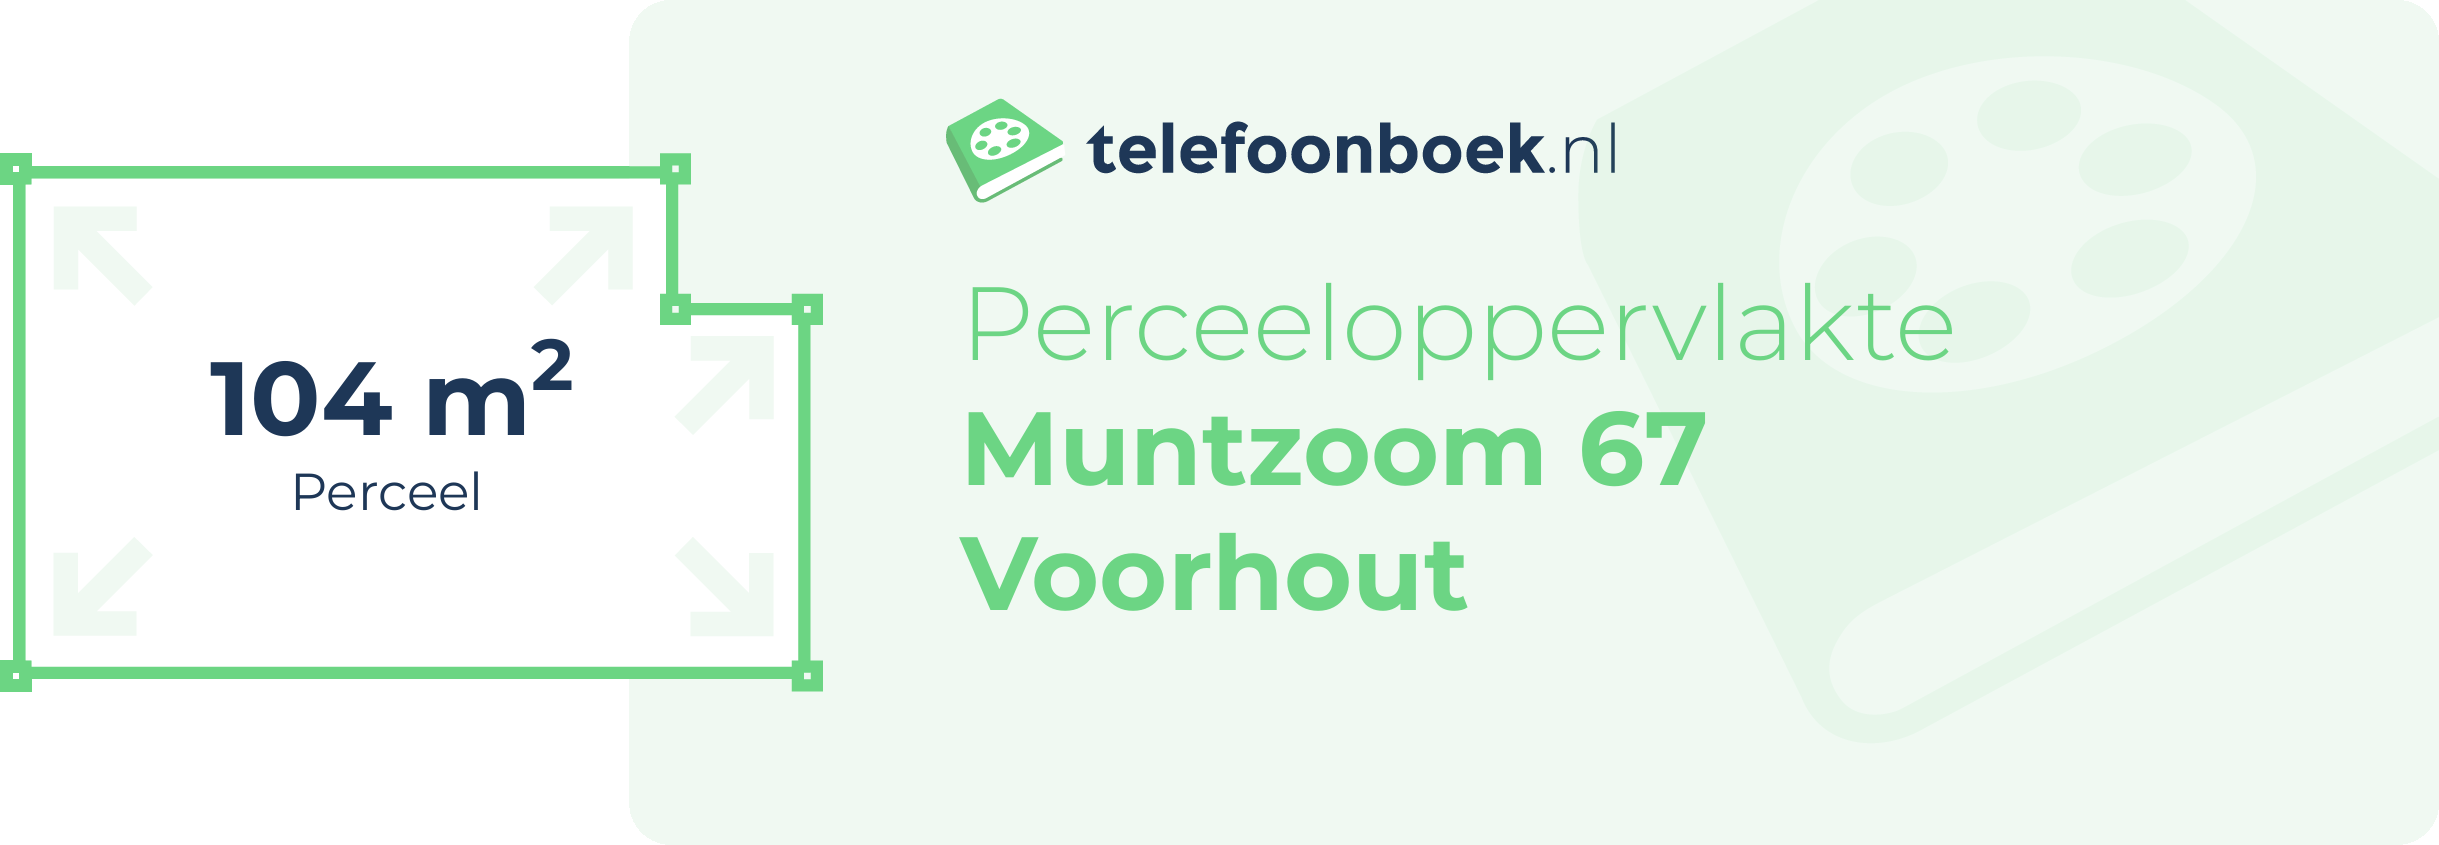 Perceeloppervlakte Muntzoom 67 Voorhout